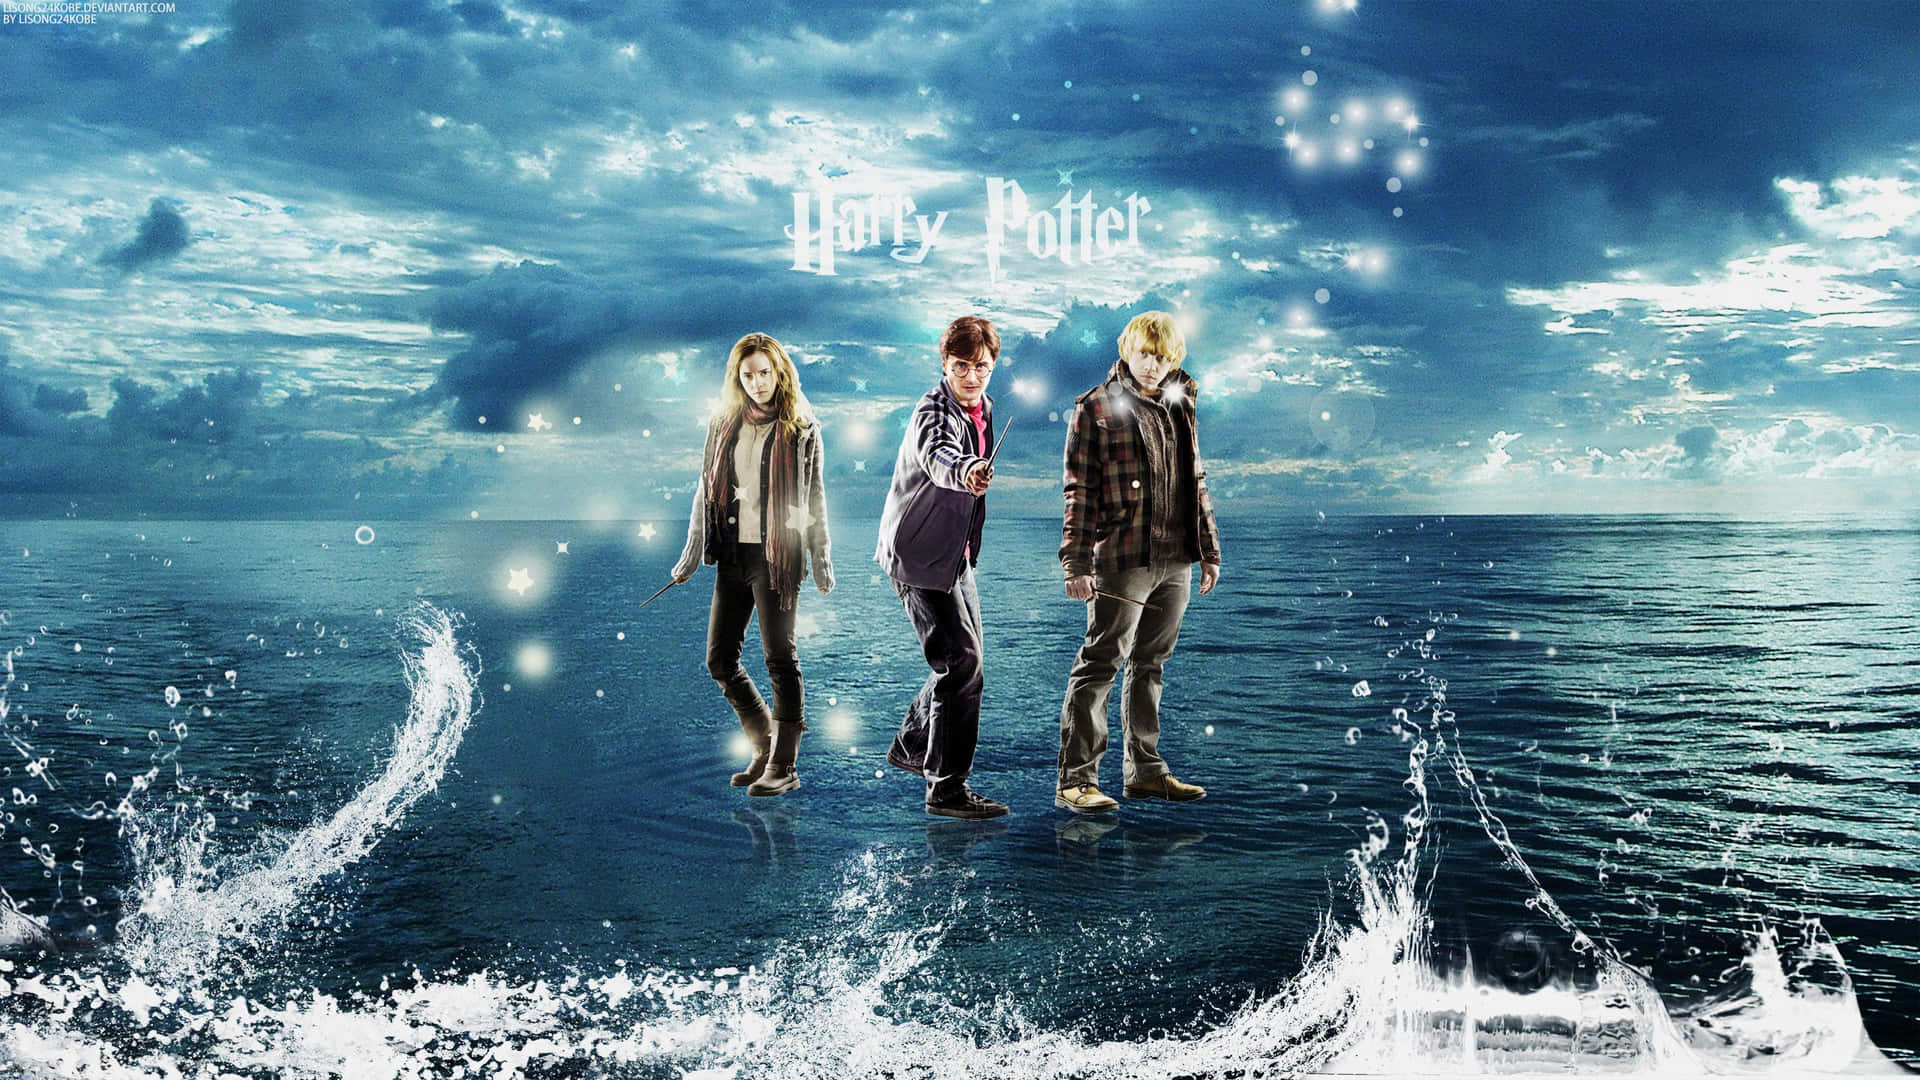 Harry,ron Und Hermione: Das Goldene Trio Von Hogwarts Wallpaper